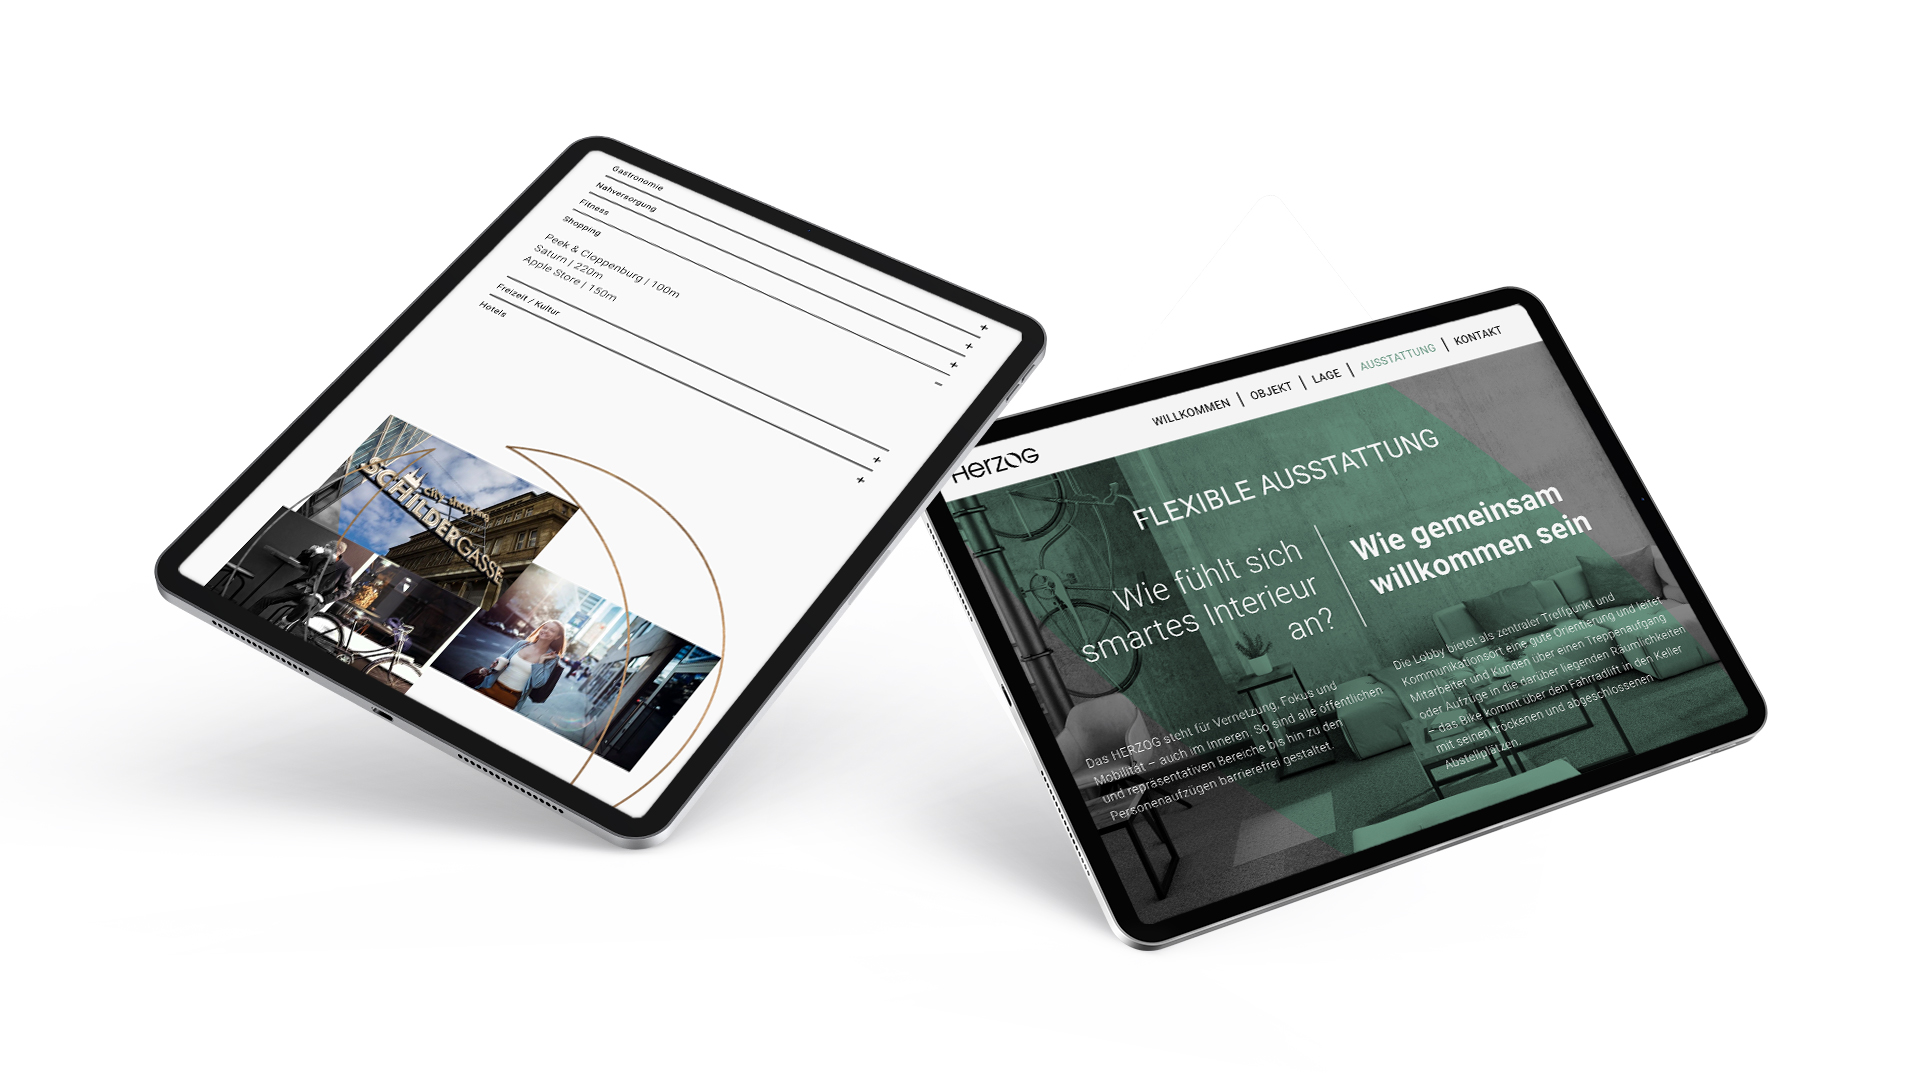 Das responsive Website Design auf dem Tablet für das Herzog von Bauwens, erstellt von der Agentur Königspunkt.
				